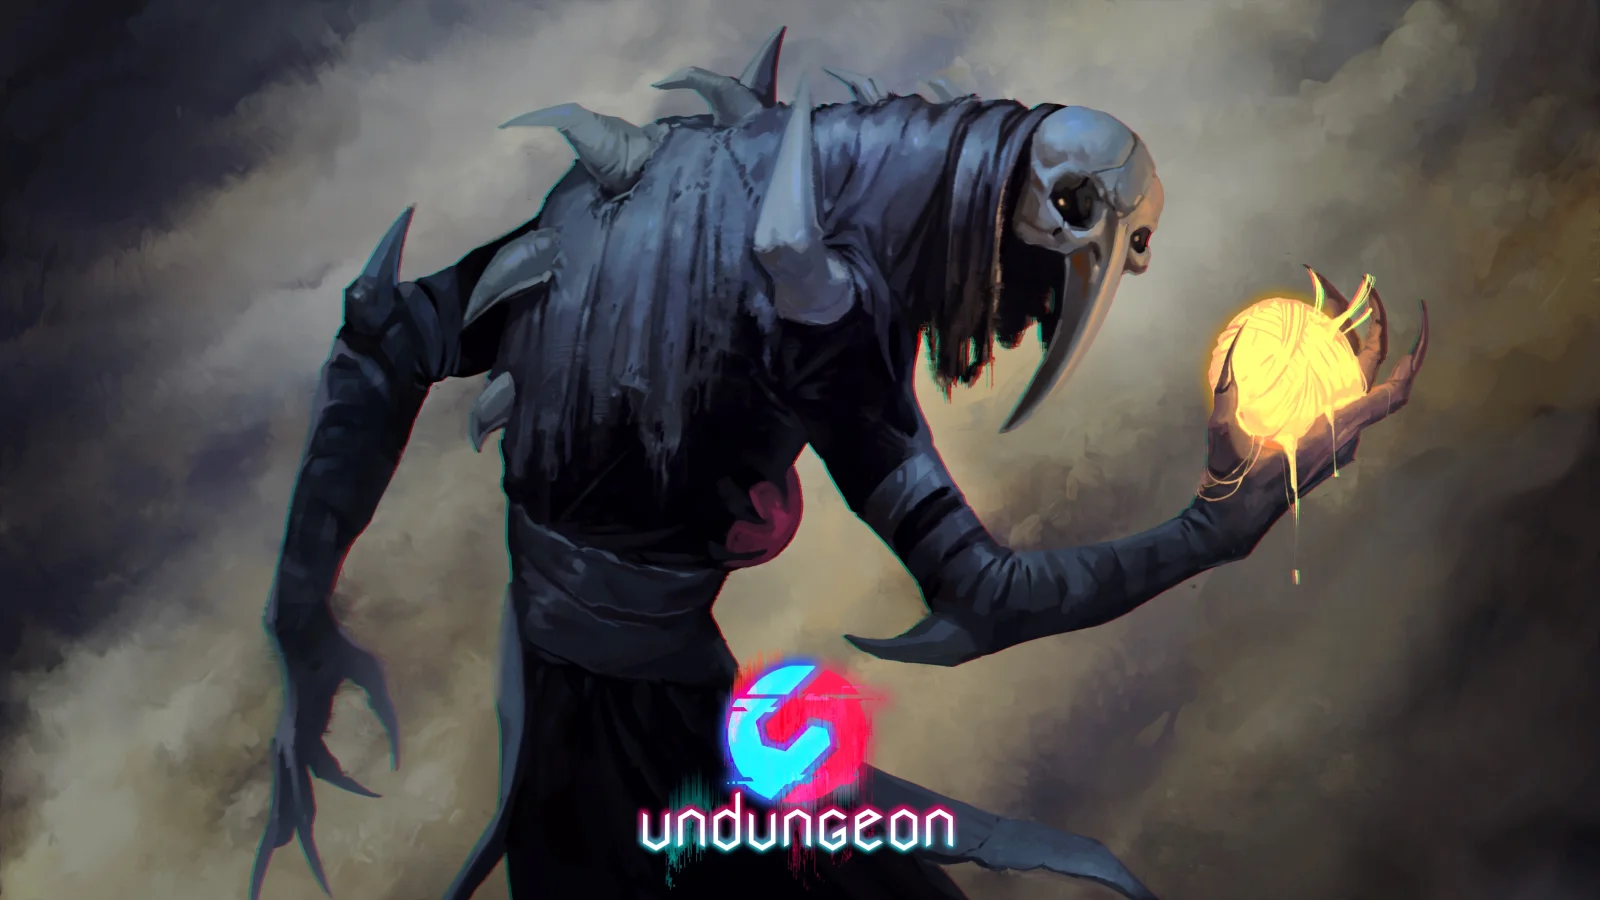 像素风动作RPG《Undungeon》将于11月18日推出